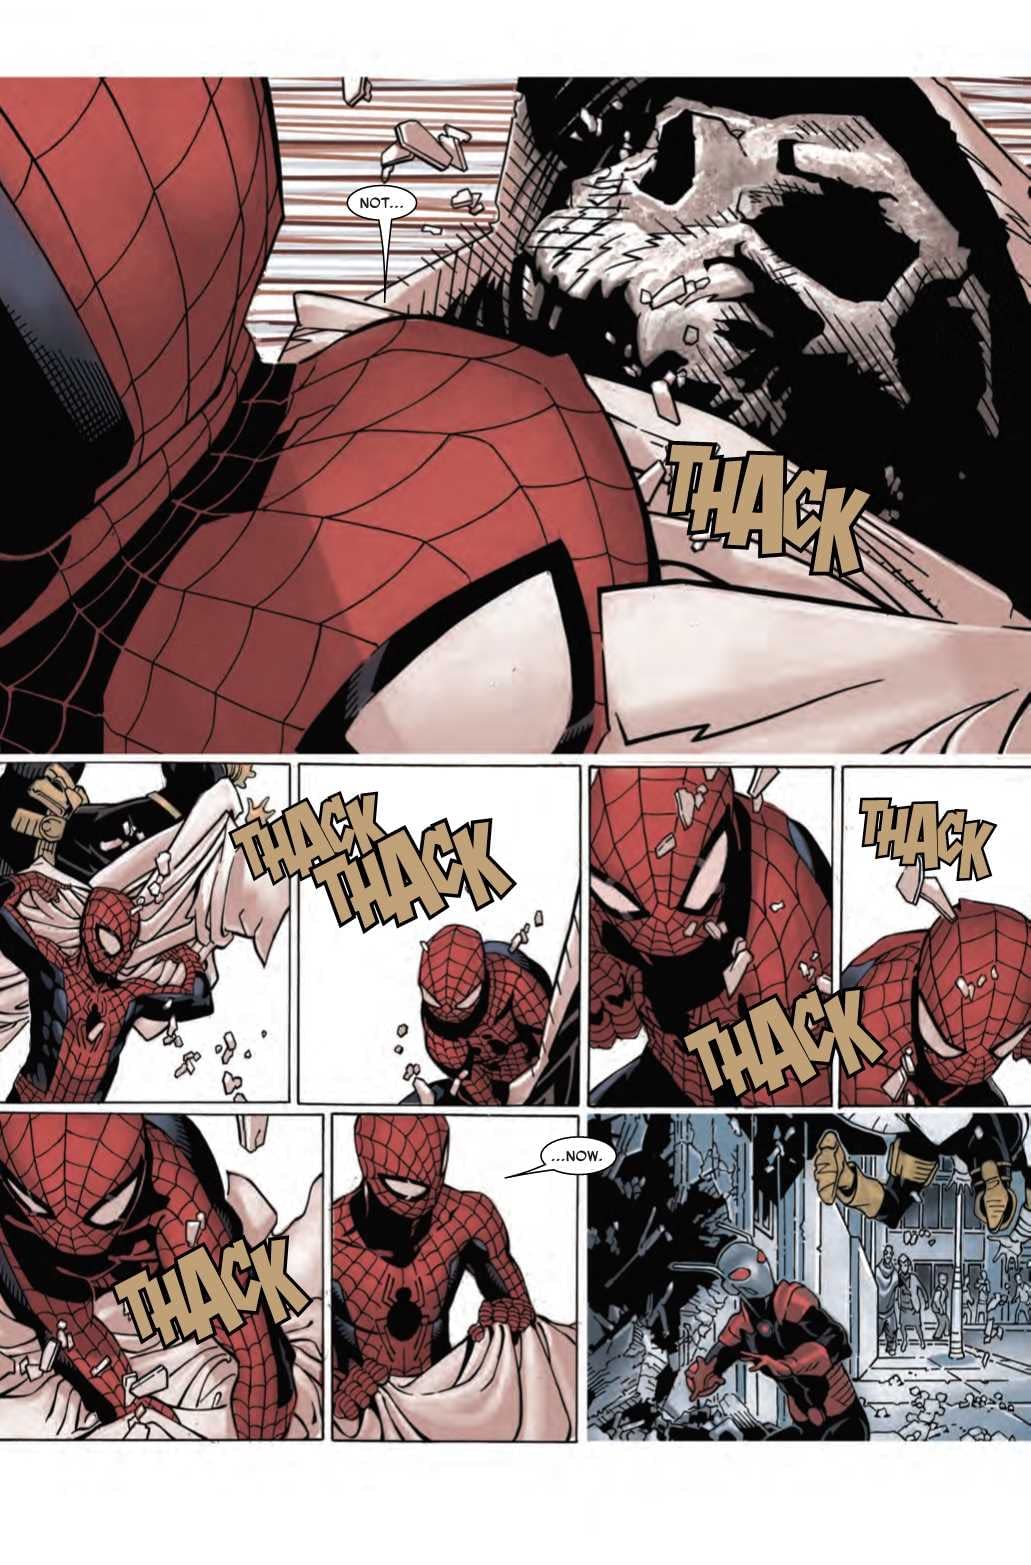 Lizard Parents Just Don't Understand in Next Week's Amazing Spider-Man #15